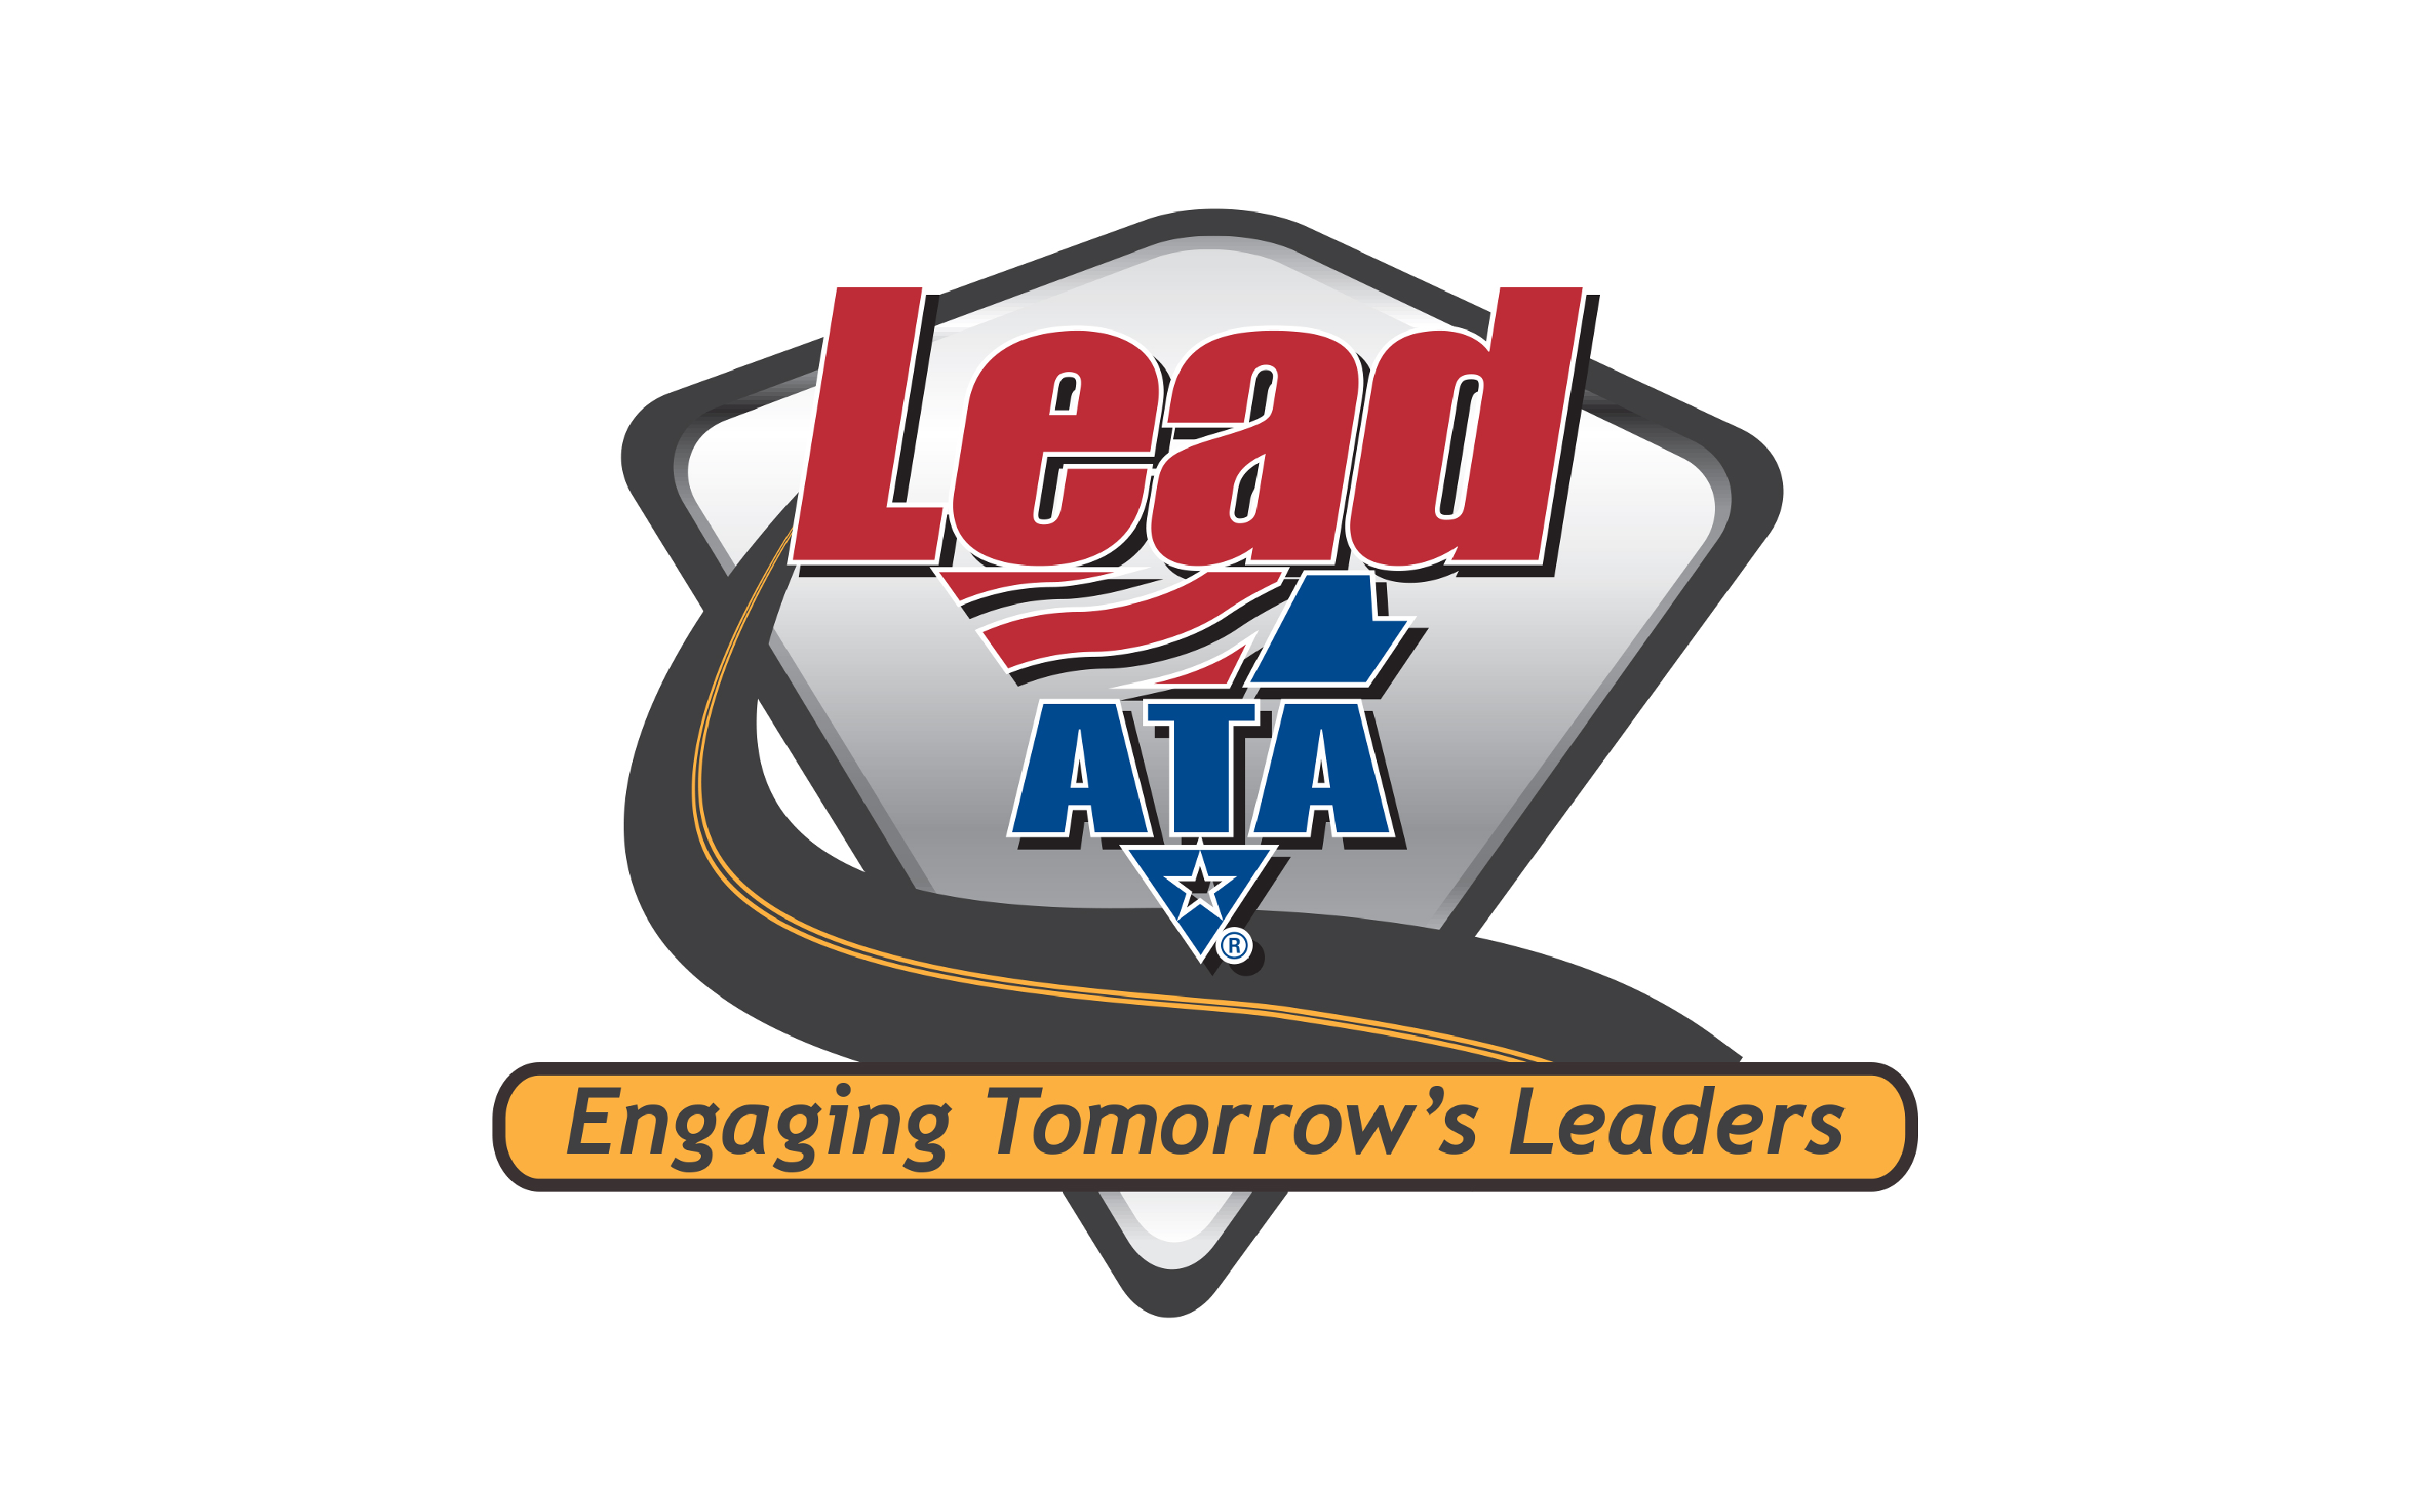 Lead ata logo size correct